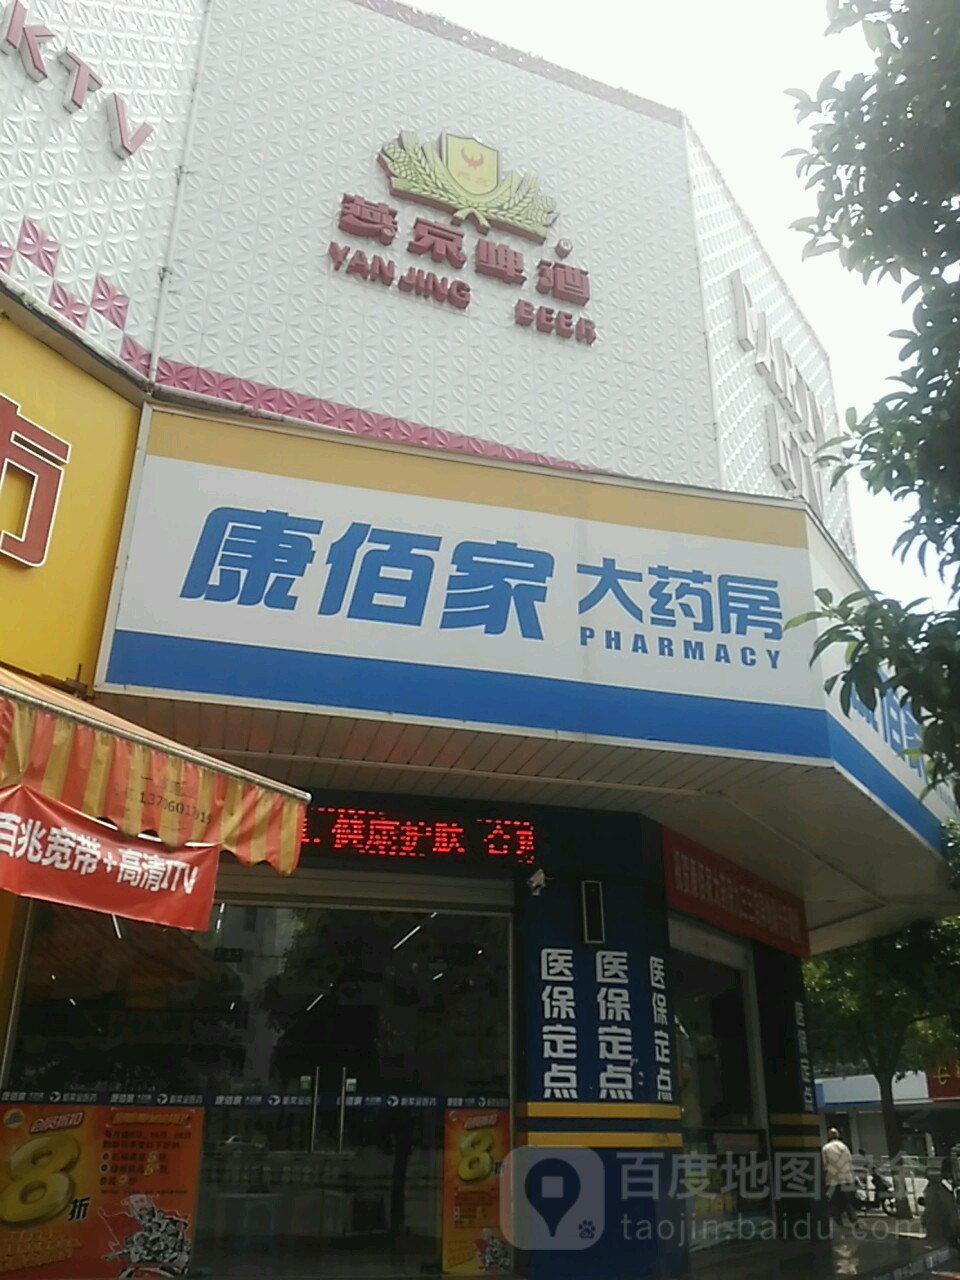 康佰家大药房logo图片